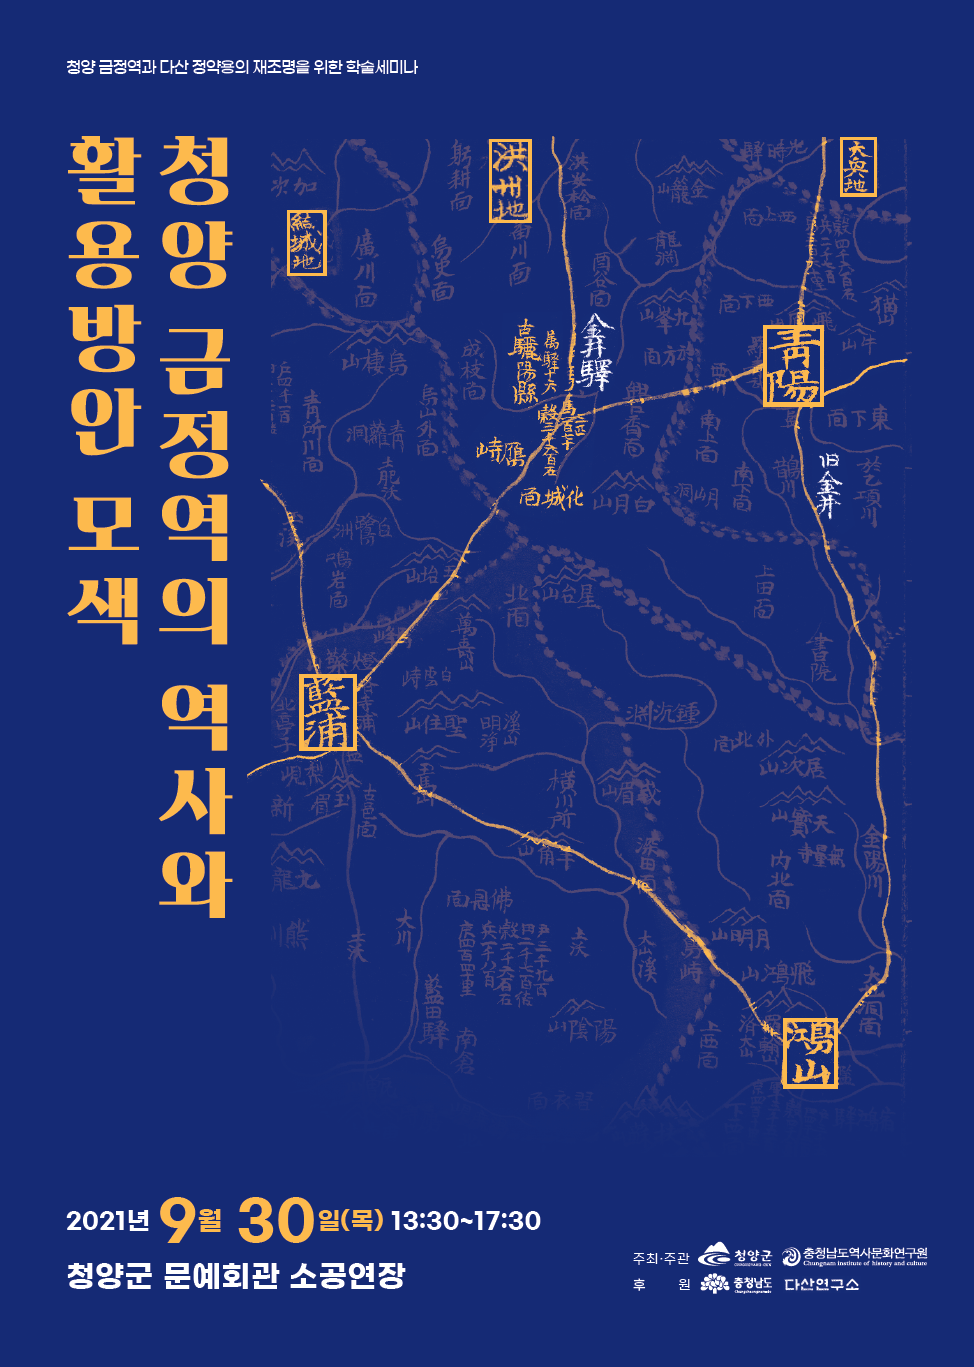 충남역사문화연구원, ‘청양 금정역의 역사와 활용방안 모색’ 학술세미나 개최(2021. 9. 29.) [이미지]